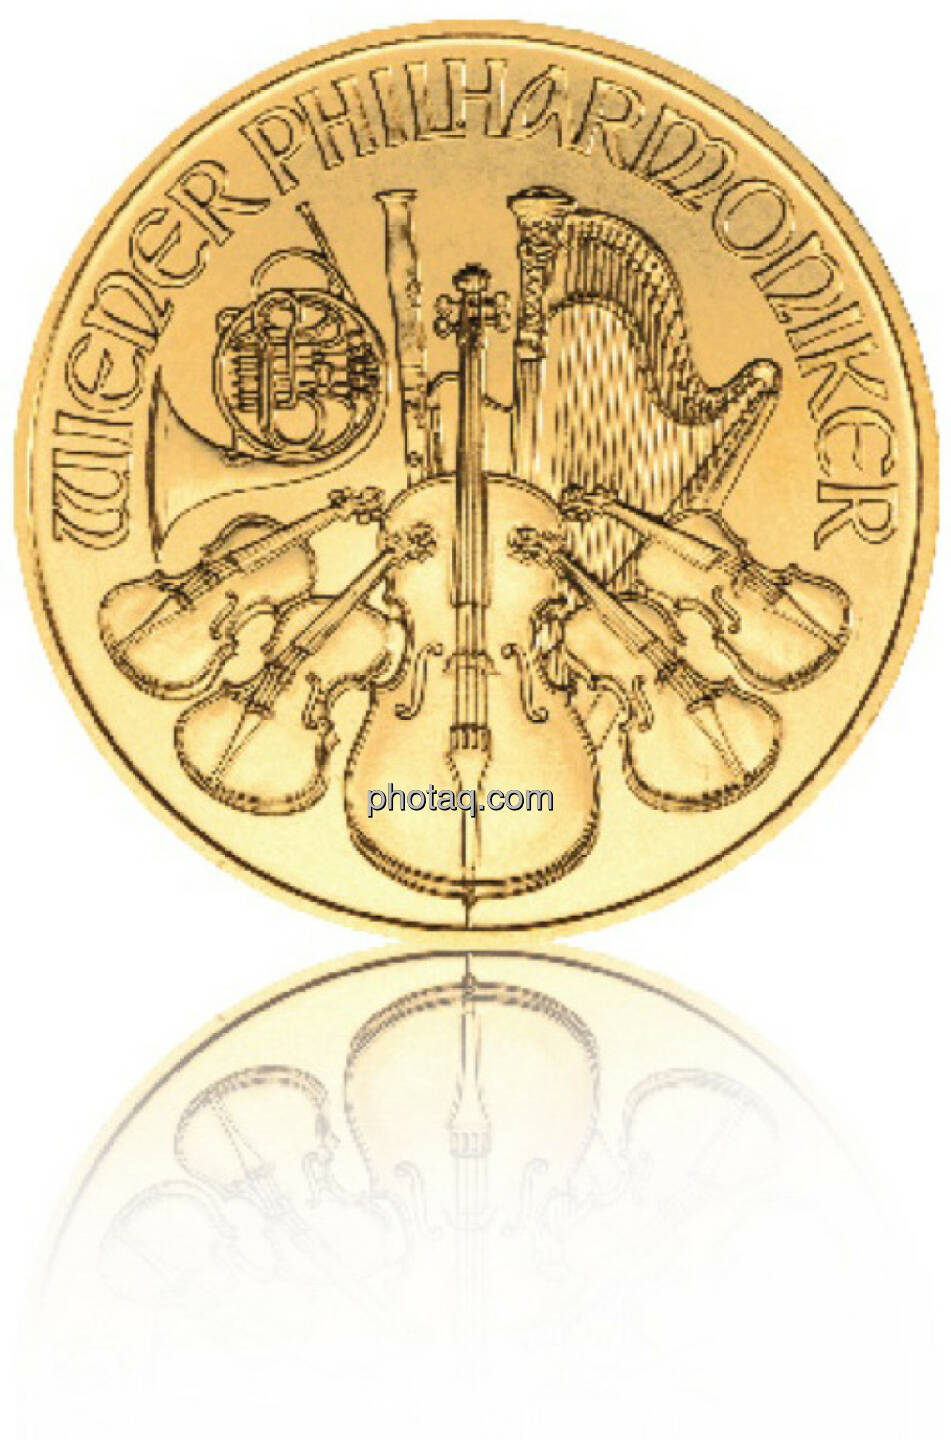 Philharmoniker 1/1 Hersteller: Münze Österreich Herkunftsland: Österreich Durchmesser: 37,00 mm Dicke: 2,00 mm Feingewicht: 31,103 Bruttogewicht: 31,103 Feinheit: 999,9 Erstprägung: 1989